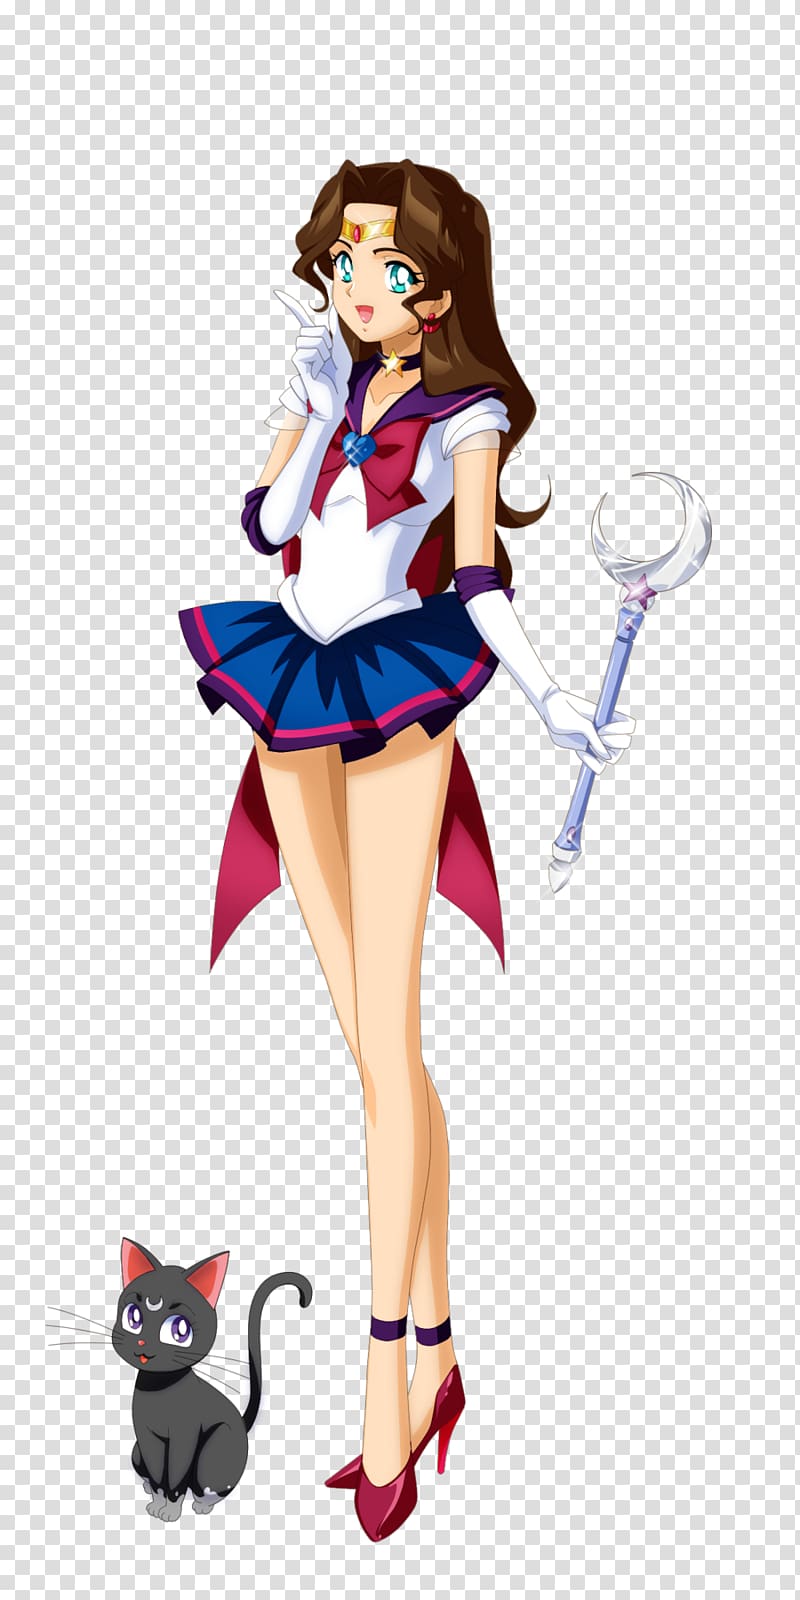 Sailor Moon Sailor Mercury Chibiusa Sailor Venus Sailor Senshi, sailor moon transparent background PNG clipart